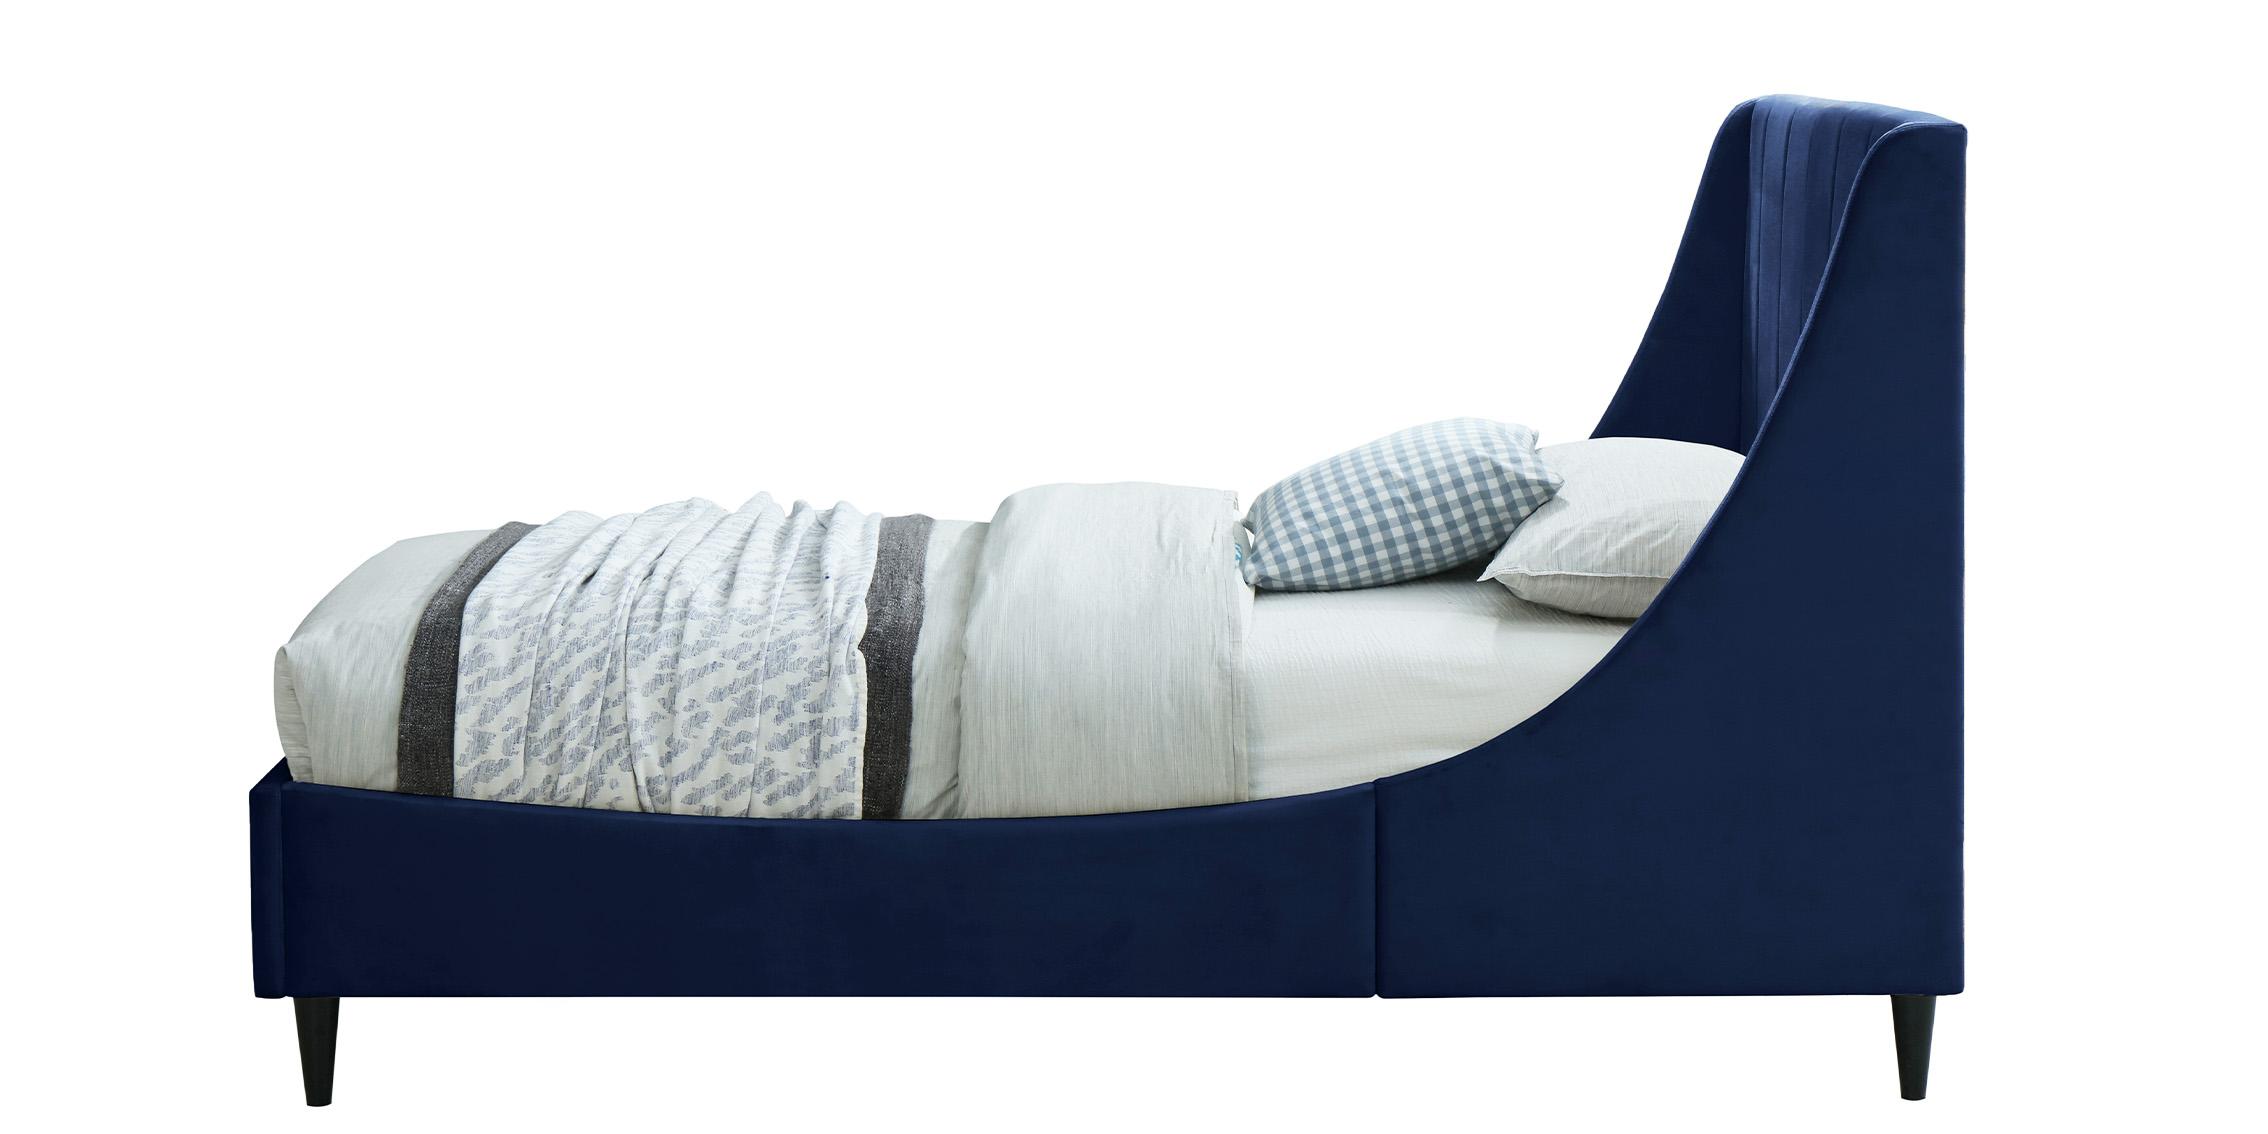 

    
EvaNavy-T Meridian Furniture Platform Bed
